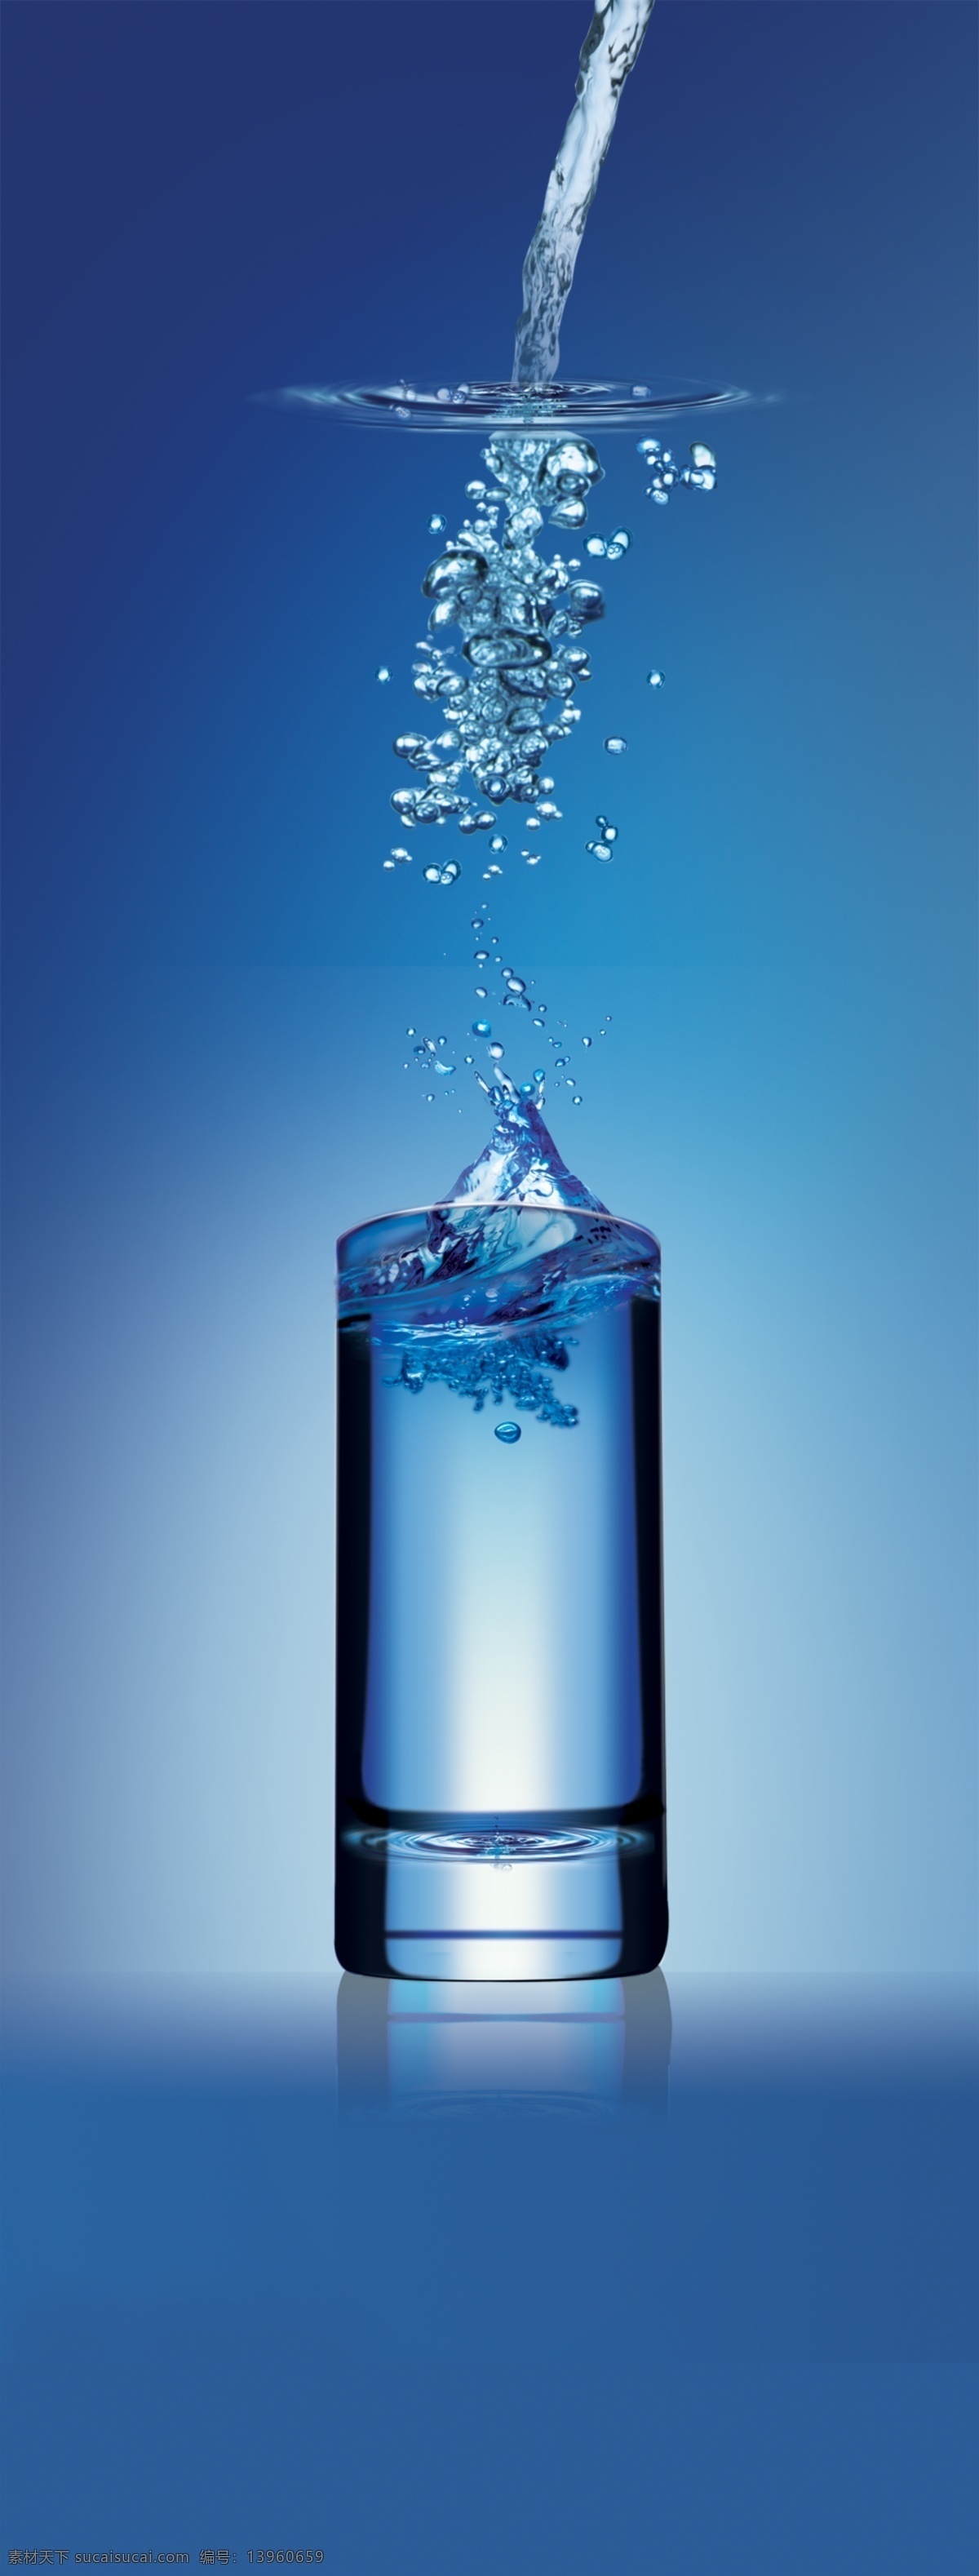 水杯 分层 杯子 蓝色 水滴 水花 源文件 水杯素材下载 水杯模板下载 矢量图 日常生活